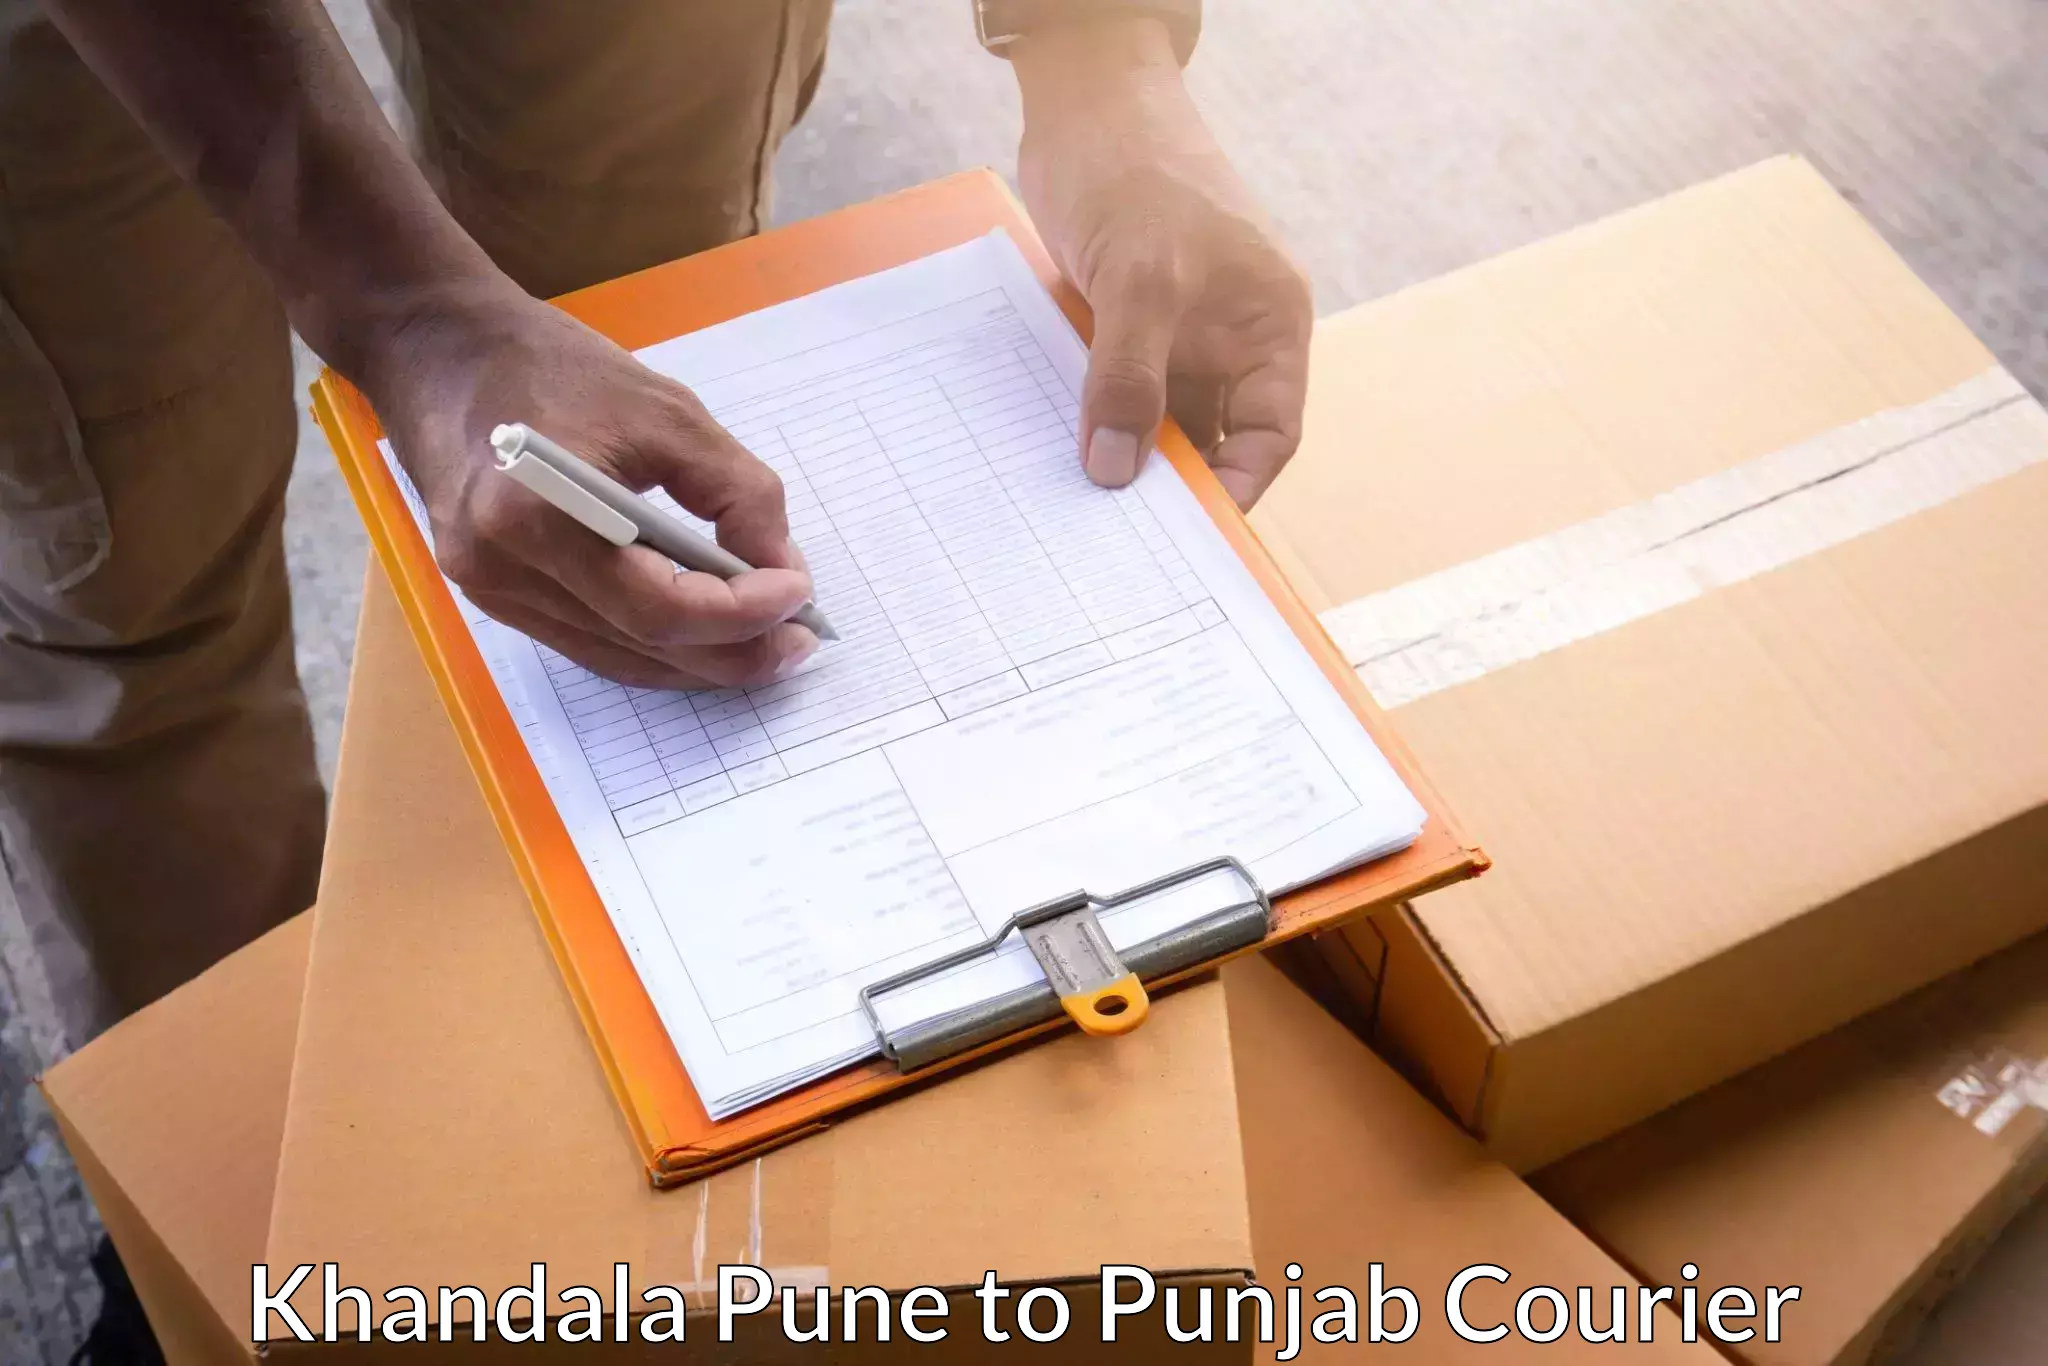 Advanced shipping technology Khandala Pune to Sirhind Fatehgarh